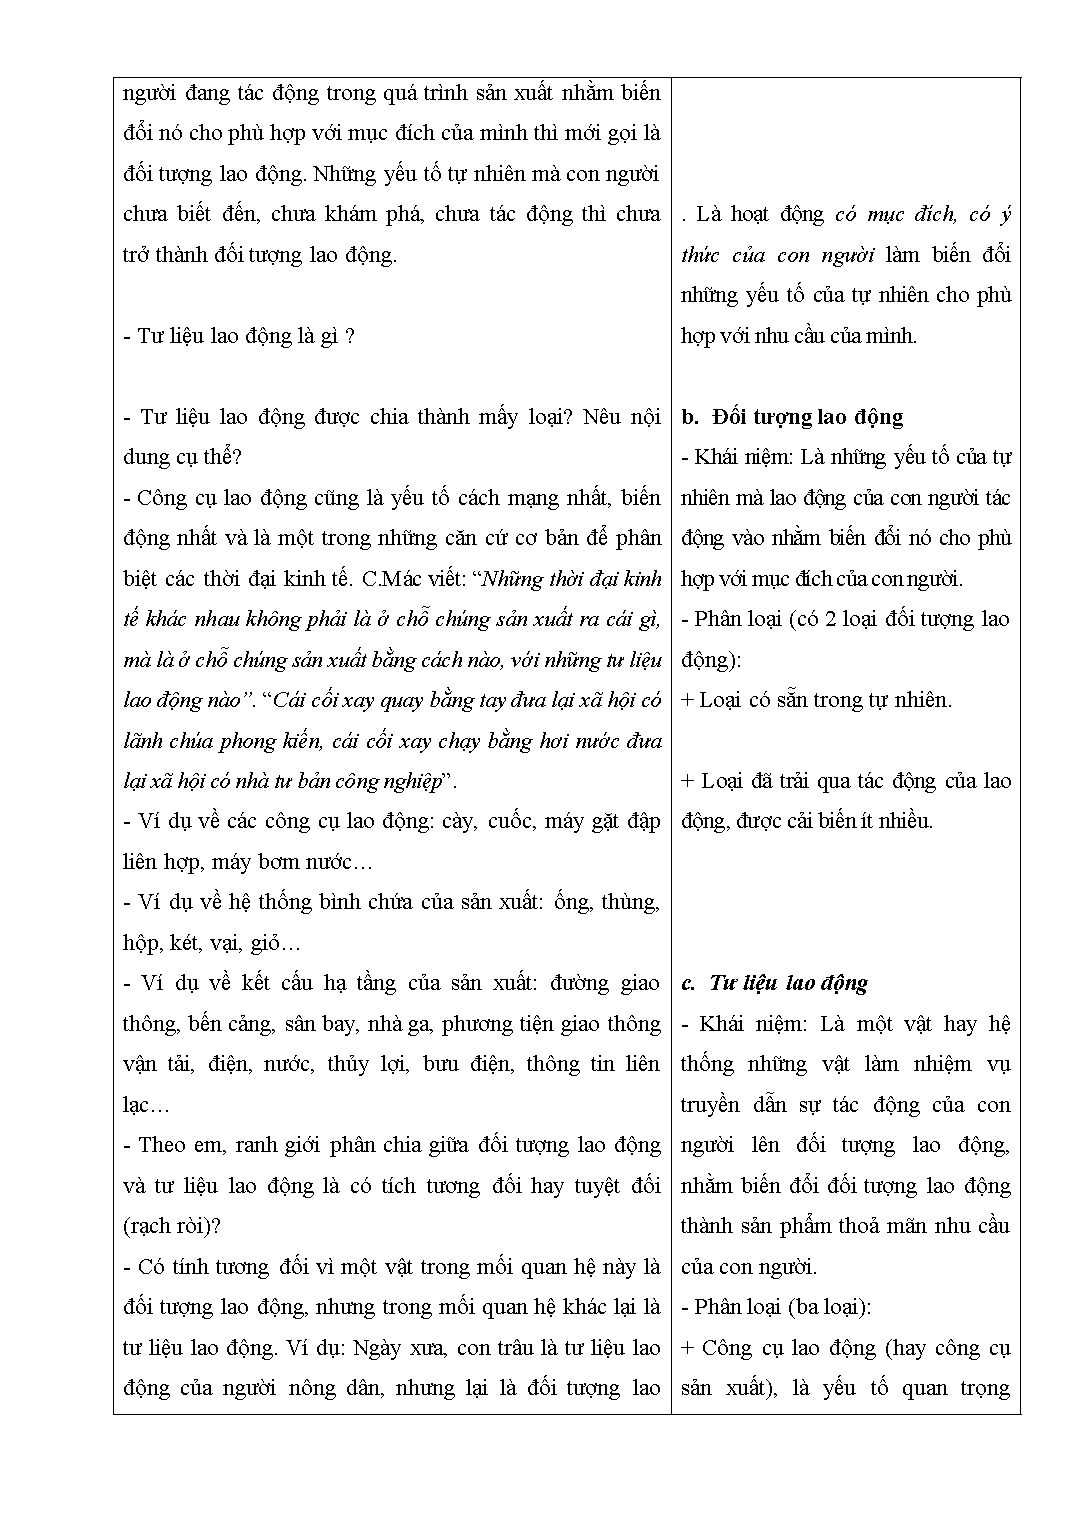 Giáo án Giáo dục công dân 11 - Lê Quang Minh trang 5